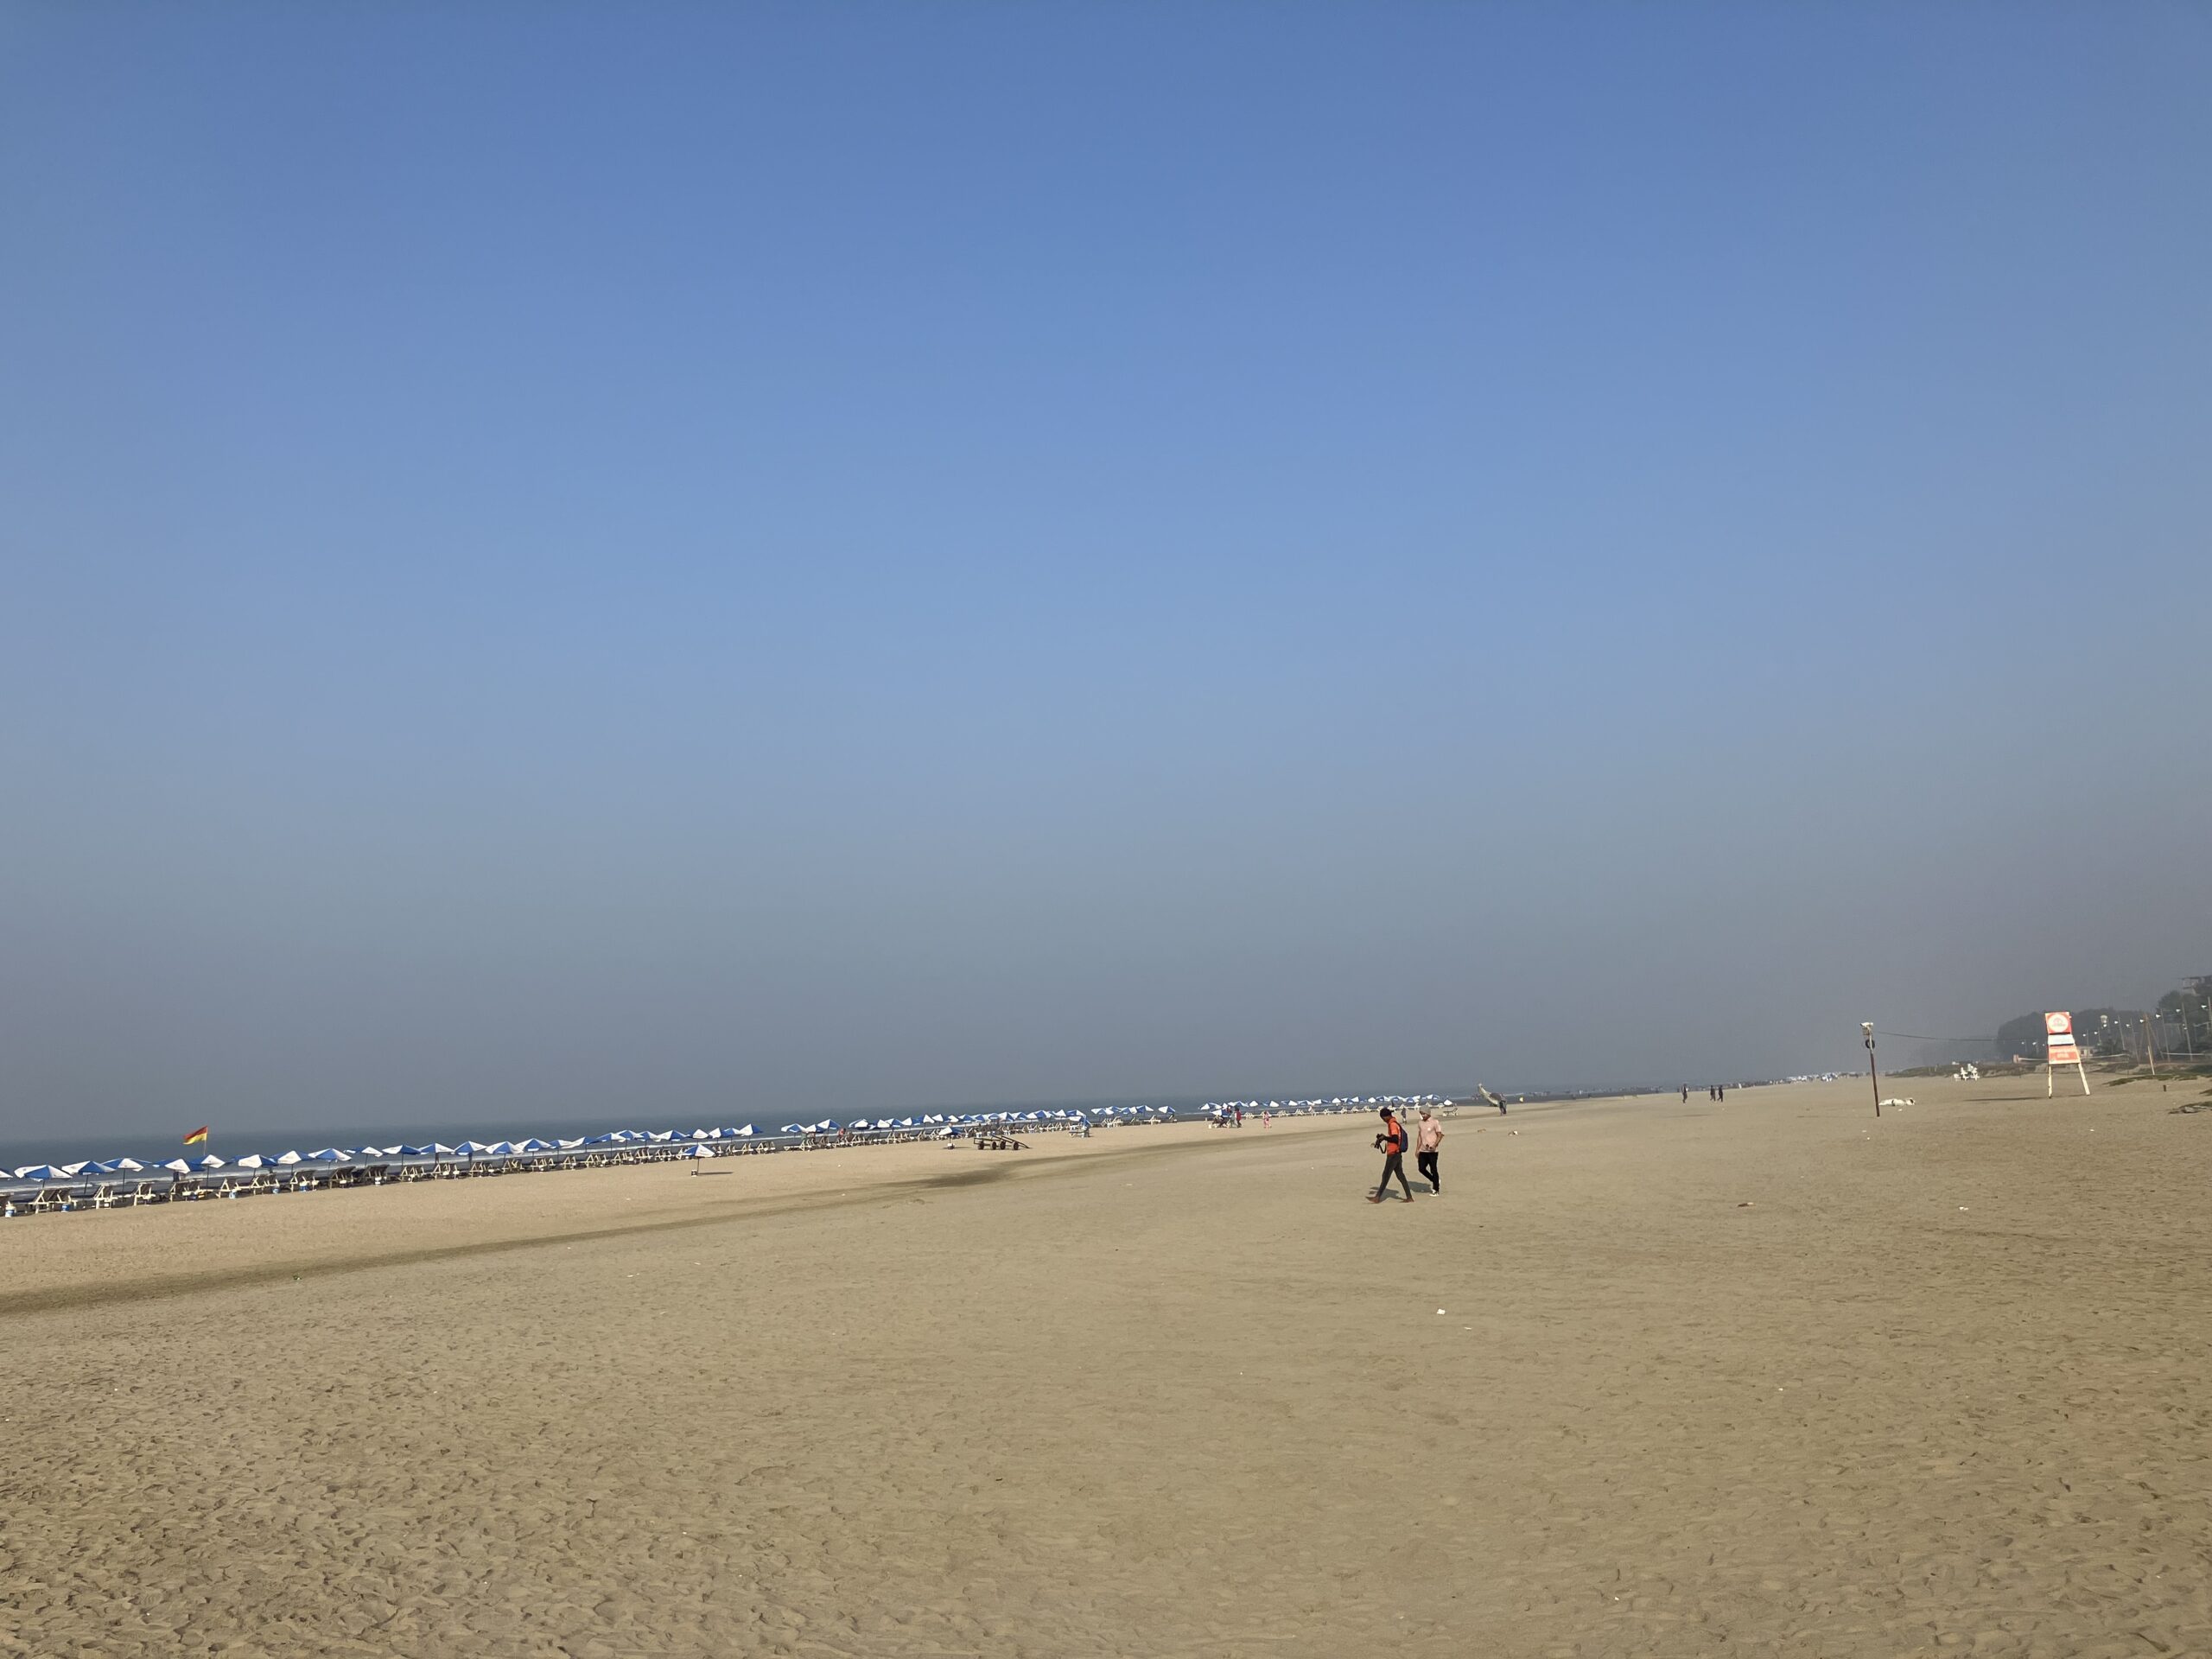 コックスバザール(Cox’s Bazar)の世界最長と言われてる砂浜